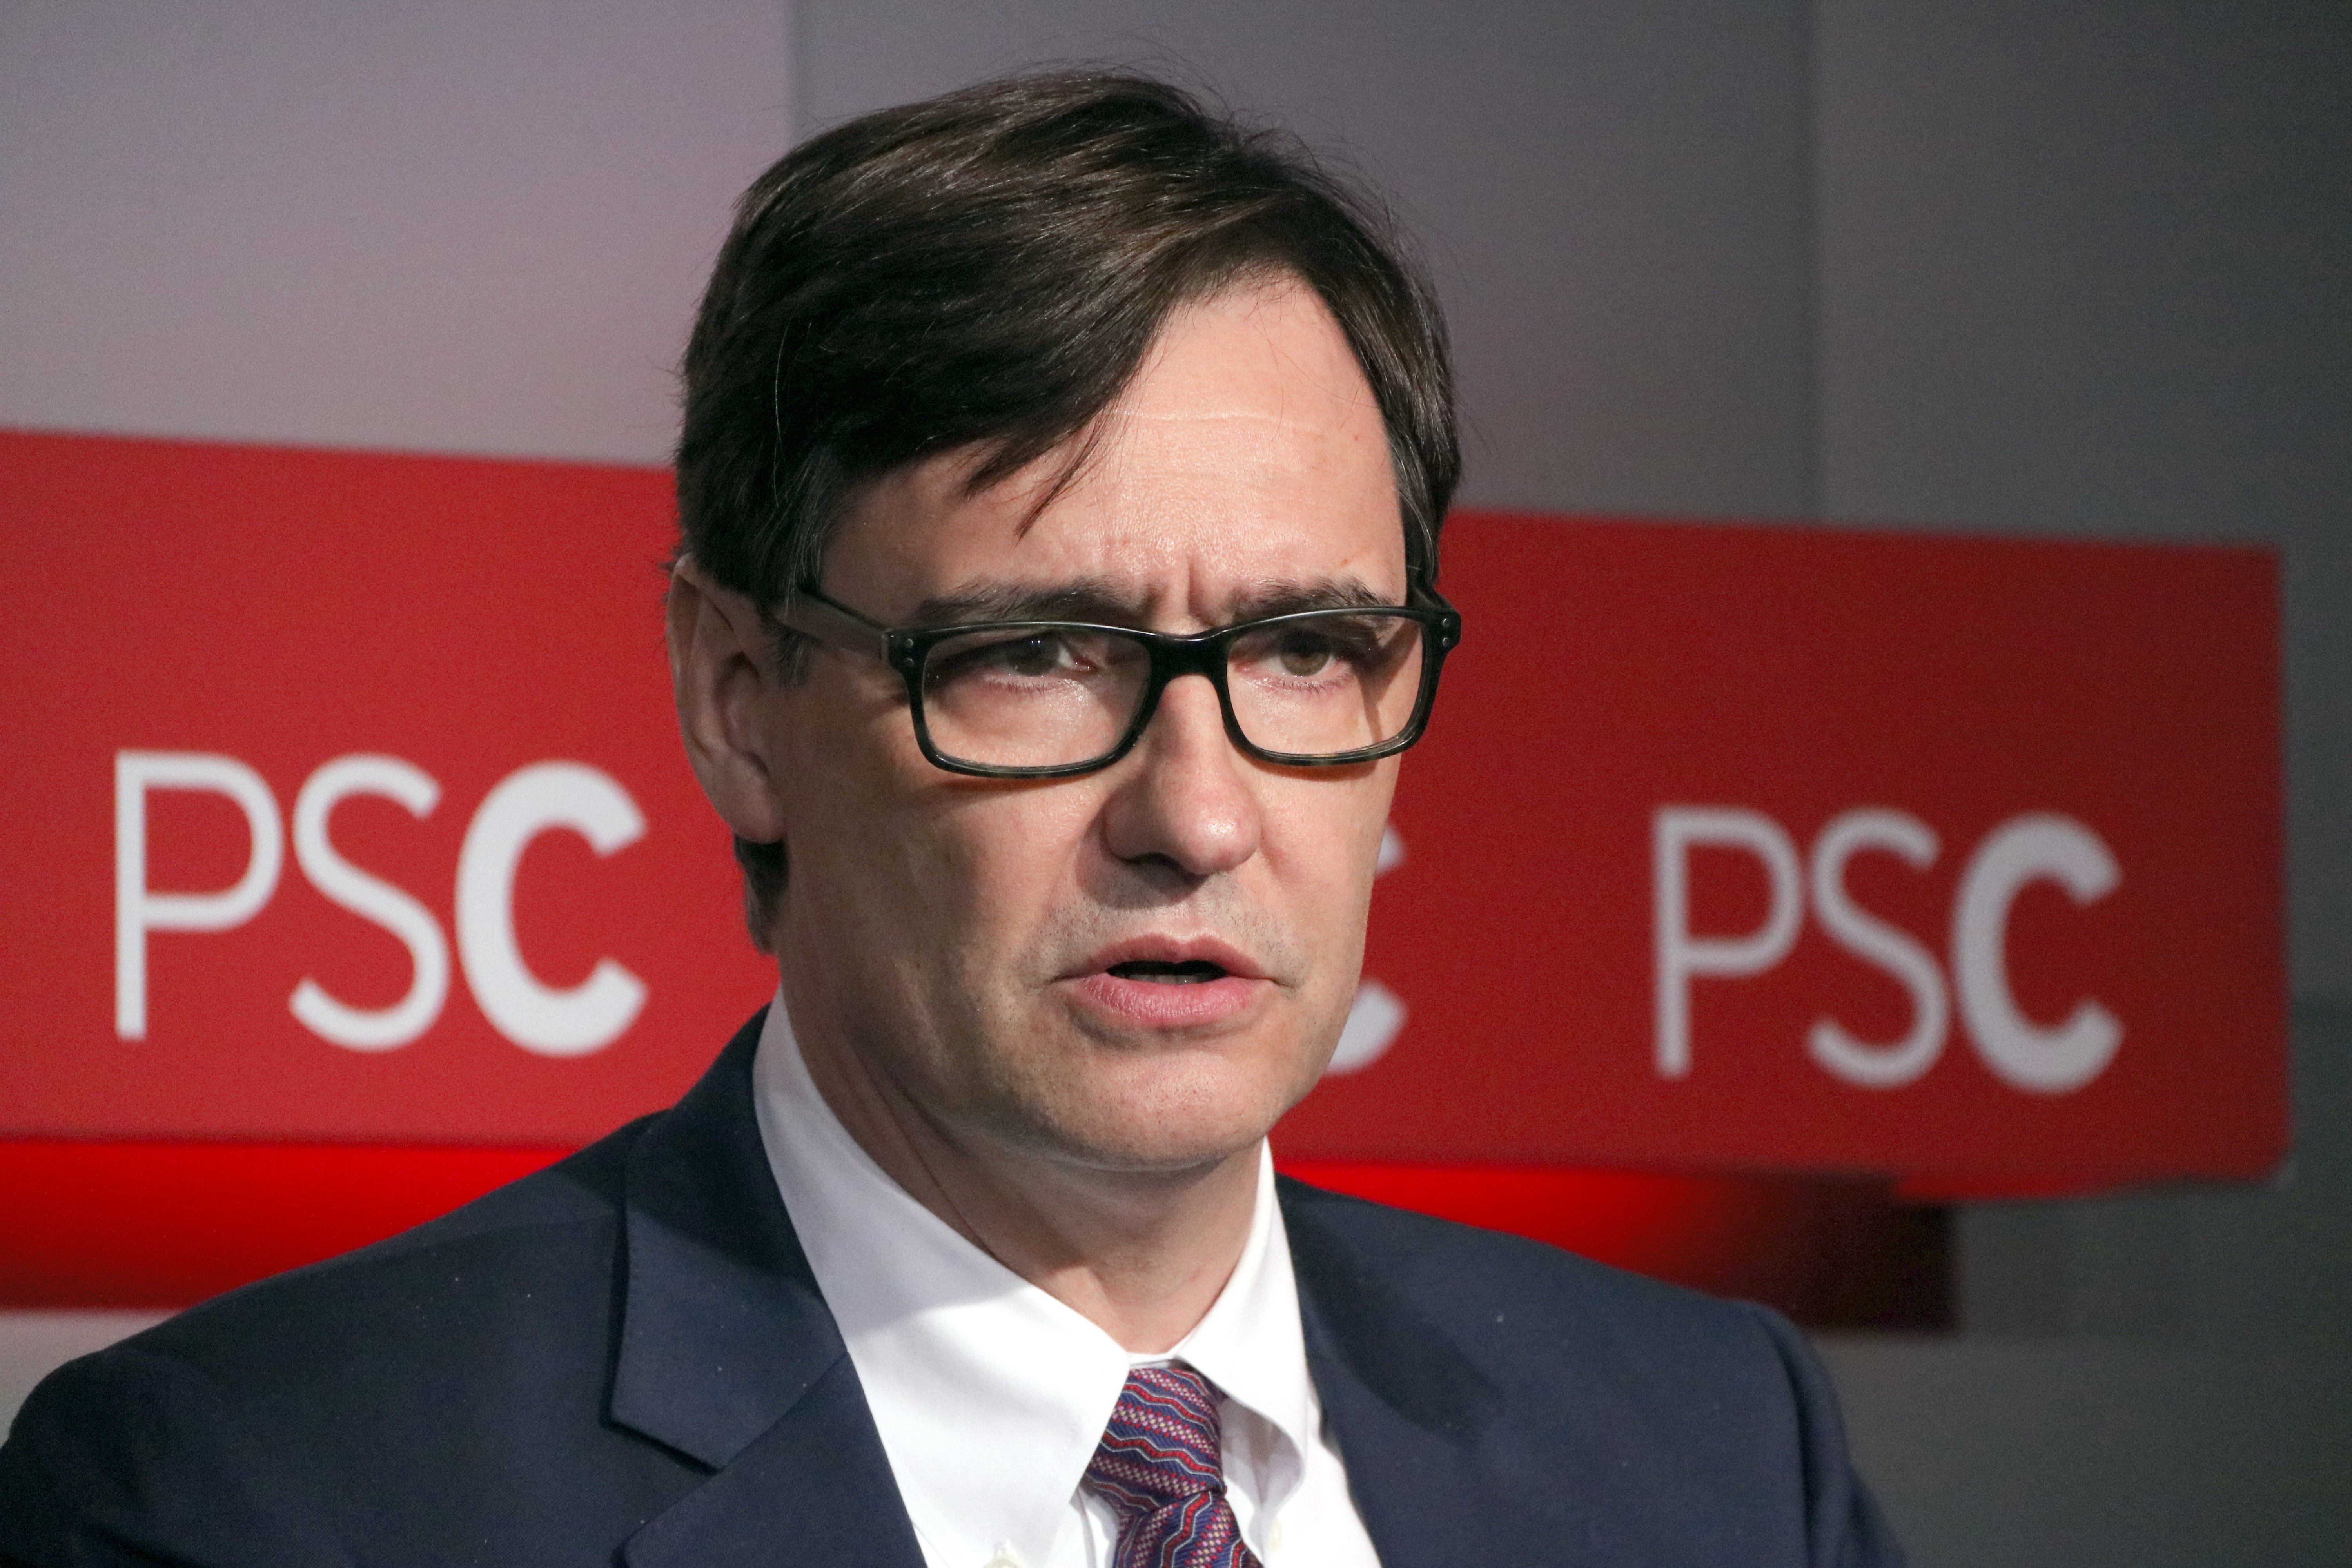 El PSC dubta de la "sinceritat" de Puigdemont per negociar amb l'Estat